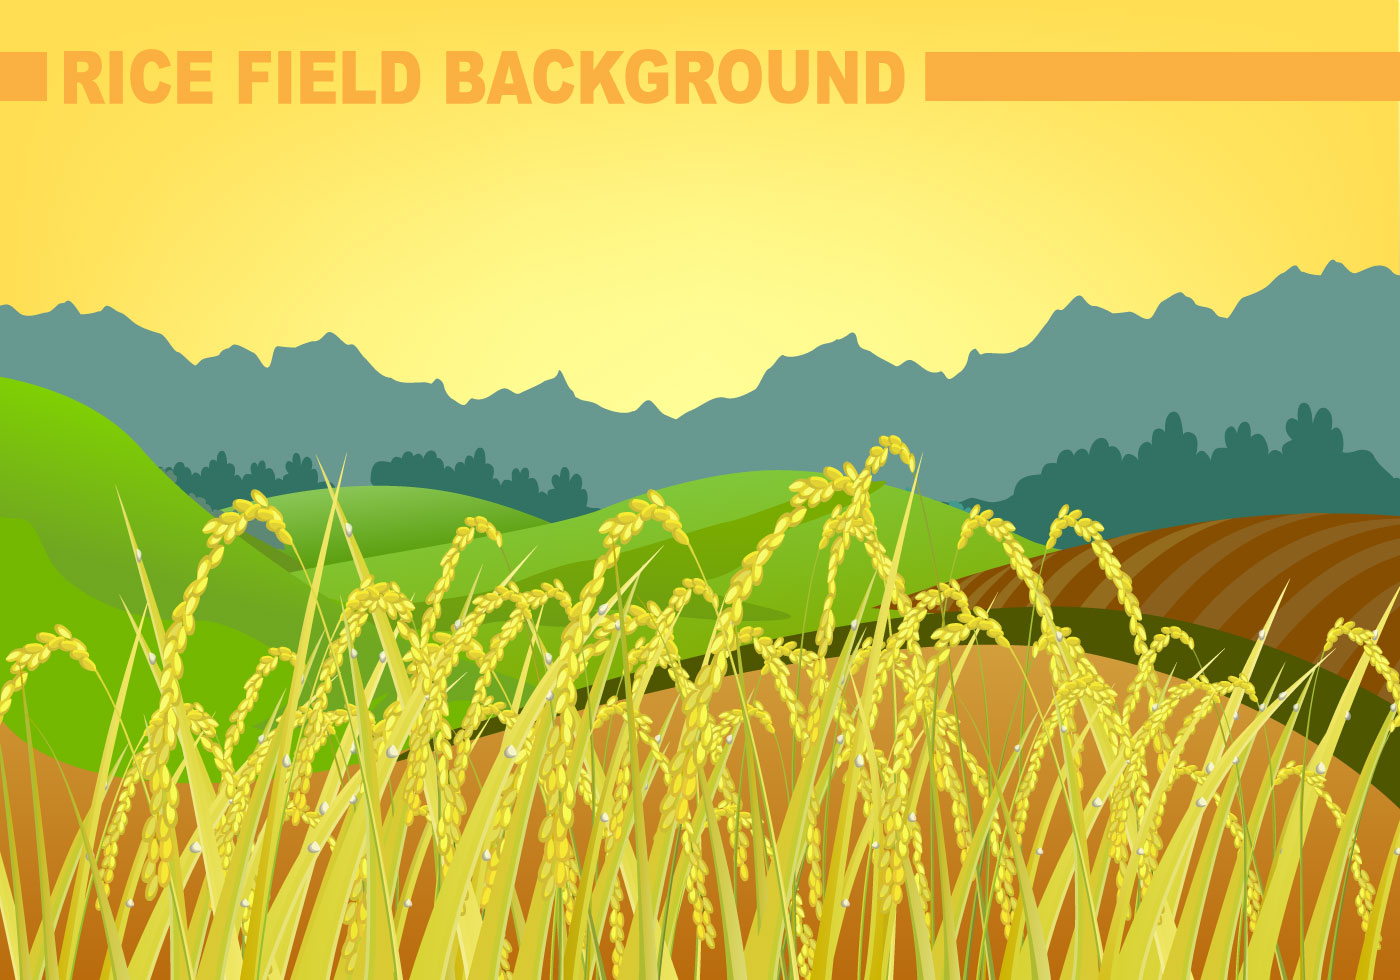 Rice Field Background Vector 107972 Vector Art at Vecteezy